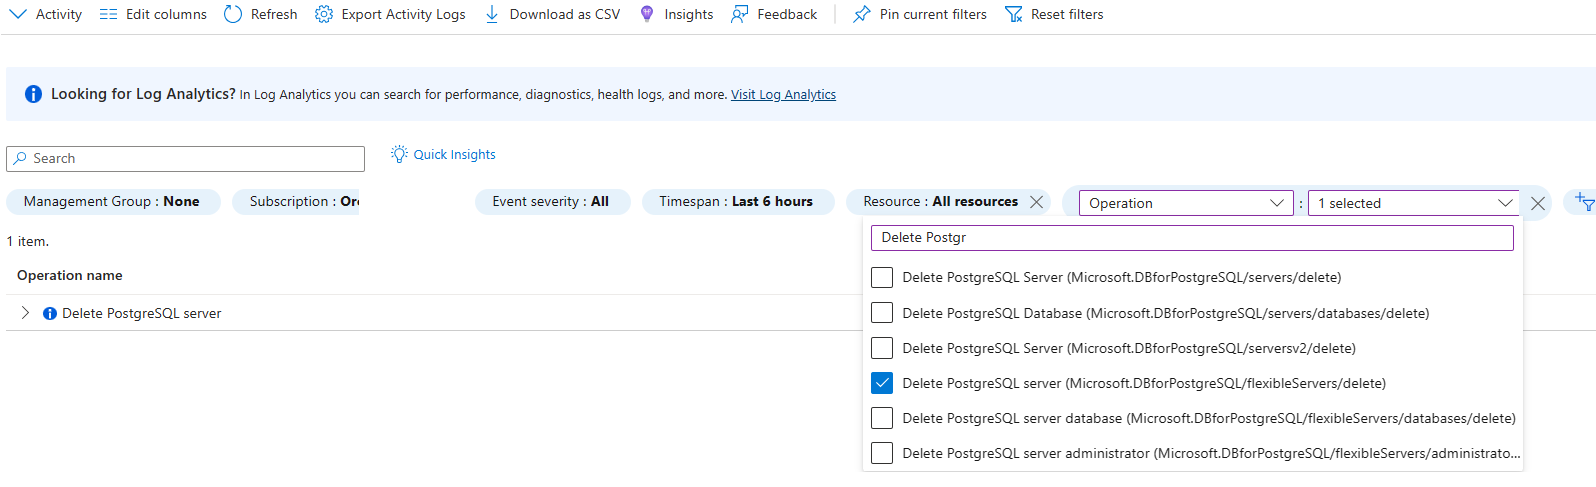 Skärmbild som visar aktivitetslogg filtrerad för borttagning av PostgreSQL-serveråtgärd.